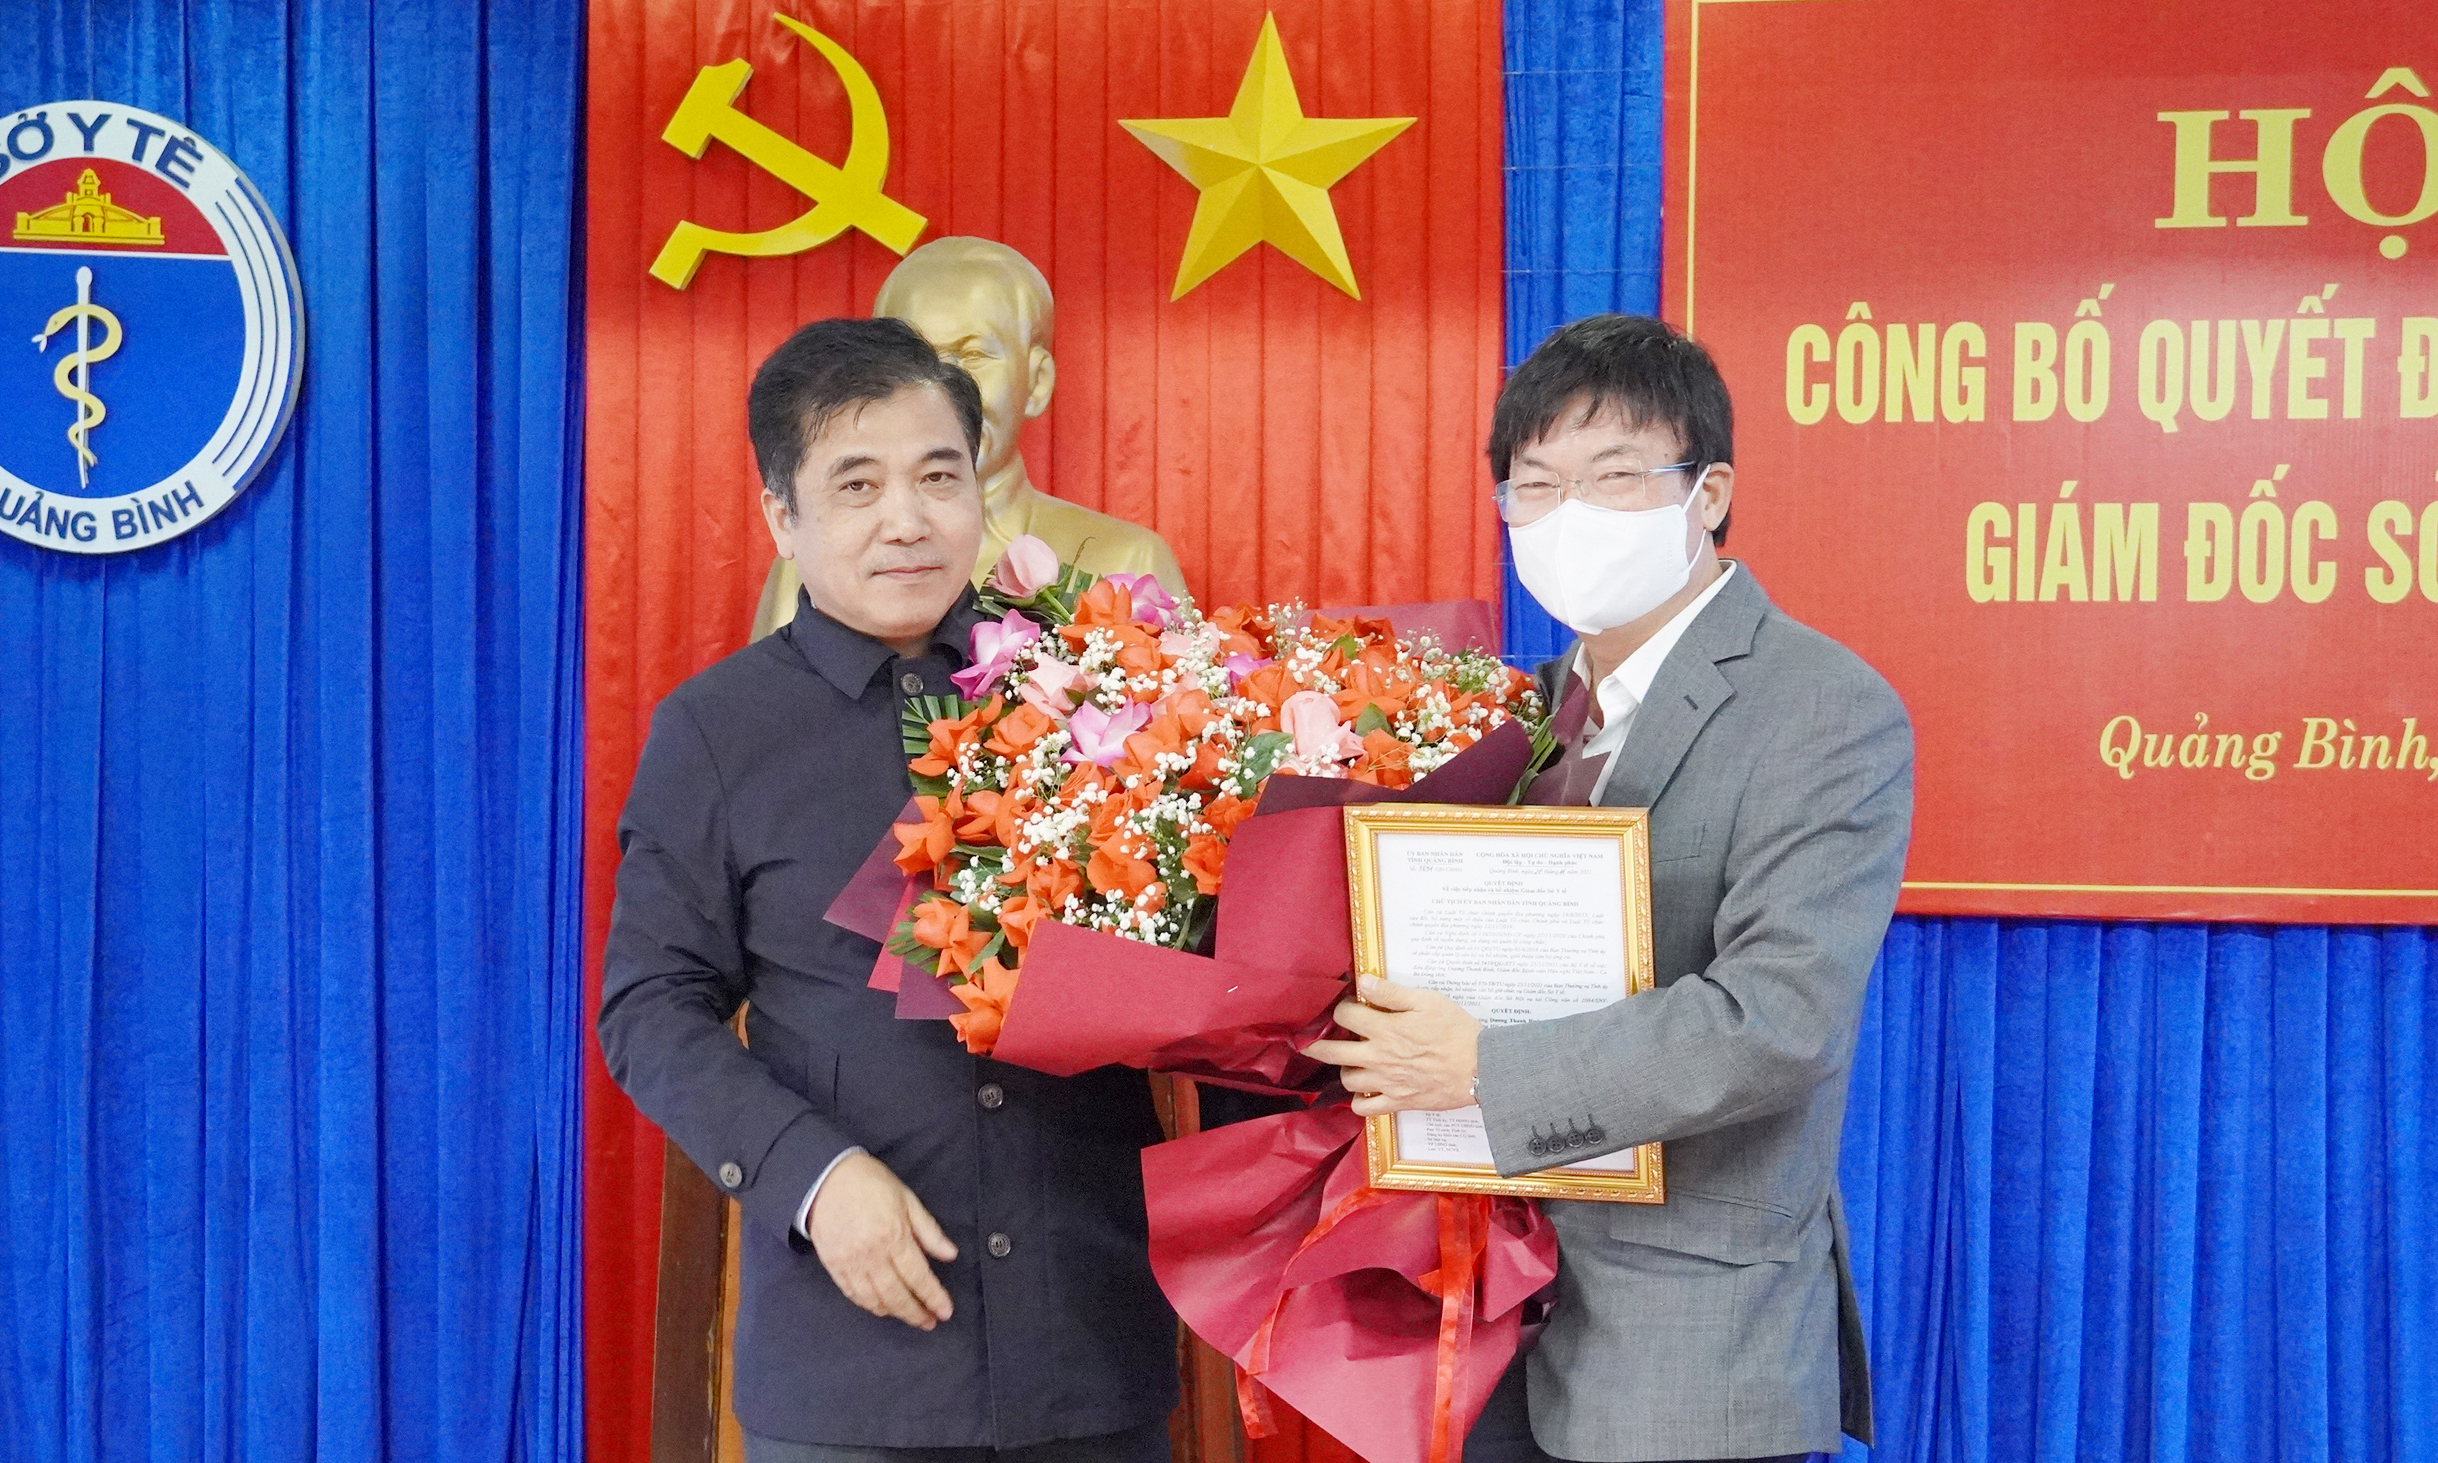 Bác sỹ Dương Thanh Bình được bổ nhiệm làm Giám đốc Sở Y tế Quảng Bình